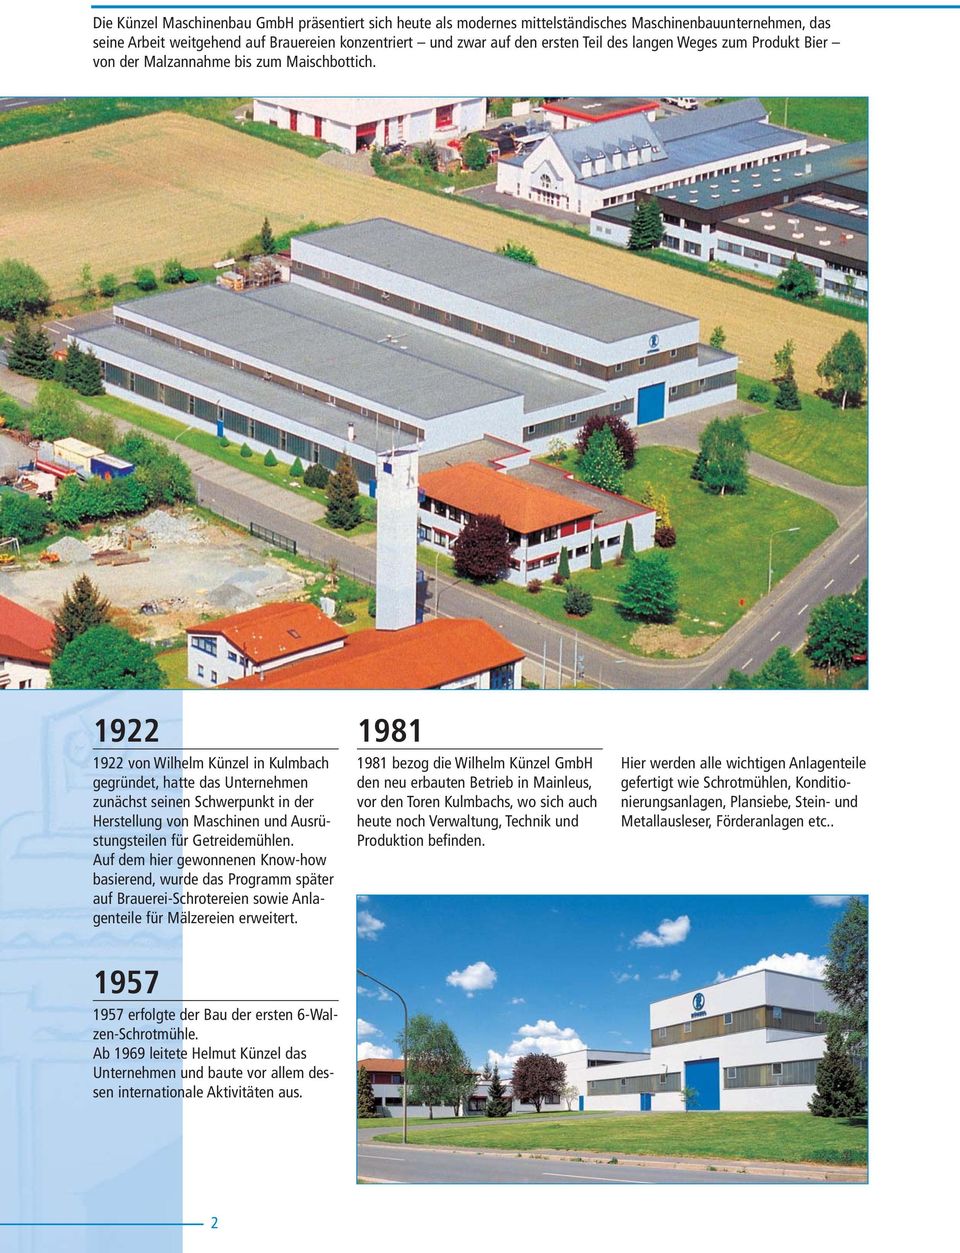 1922 1922 von Wilhelm Künzel in Kulmbach gegründet, hatte das Unternehmen zunächst seinen Schwerpunkt in der Herstellung von Maschinen und Ausrüstungsteilen für Getreidemühlen.